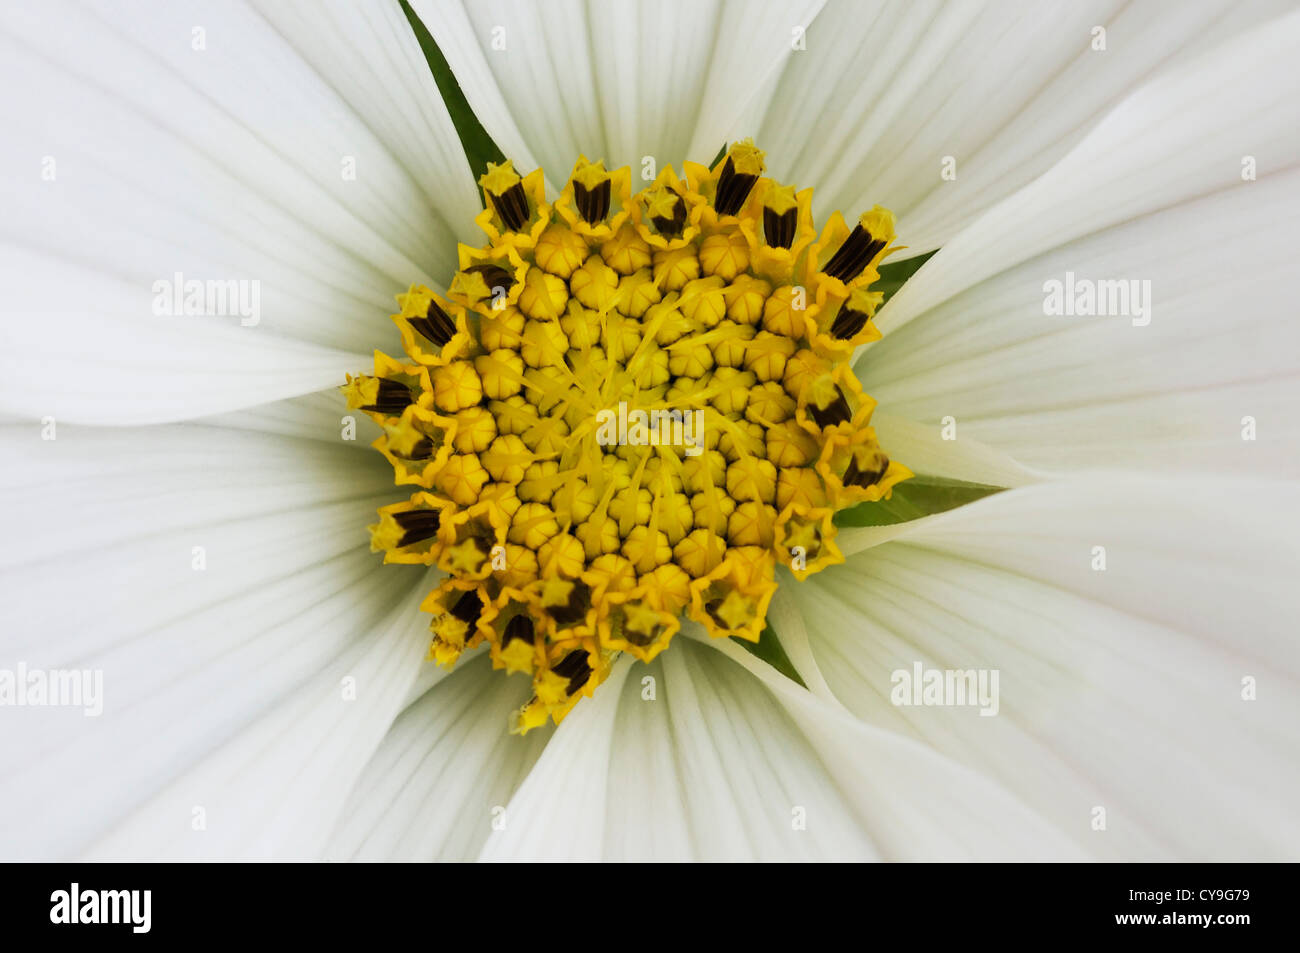 Cosmos Bipinnatus Sonata White', Cosmos ou mexicain aster. Close-up d'étamines jaune avec des pétales blancs sous forme de rayonnement centre. Banque D'Images